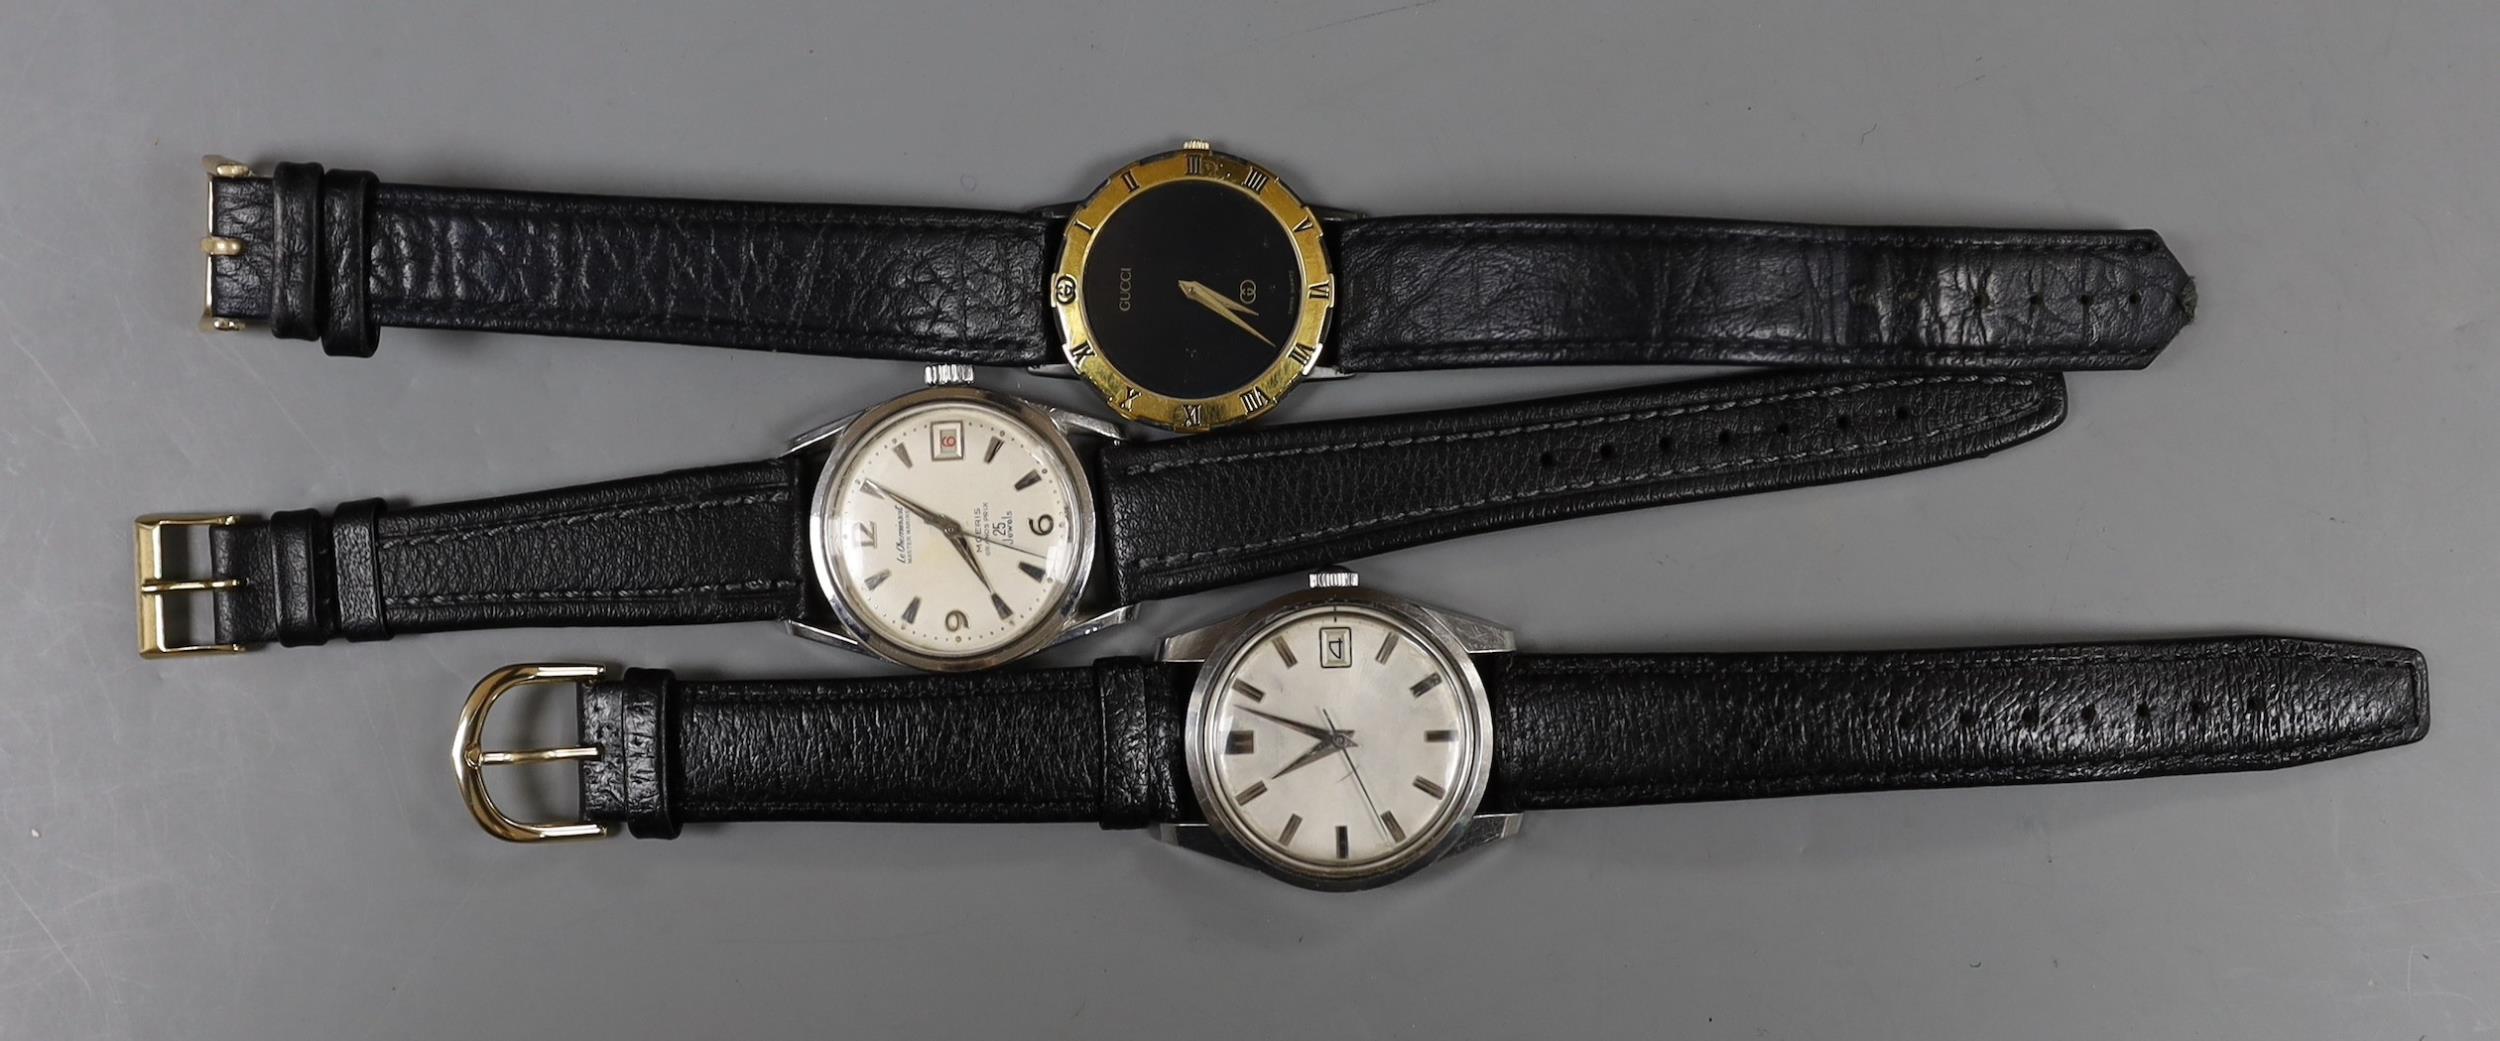 A gentleman's steel Le Chamois wrist watch, a gentleman's gold plated Gucci wrist watch and a - Image 2 of 3